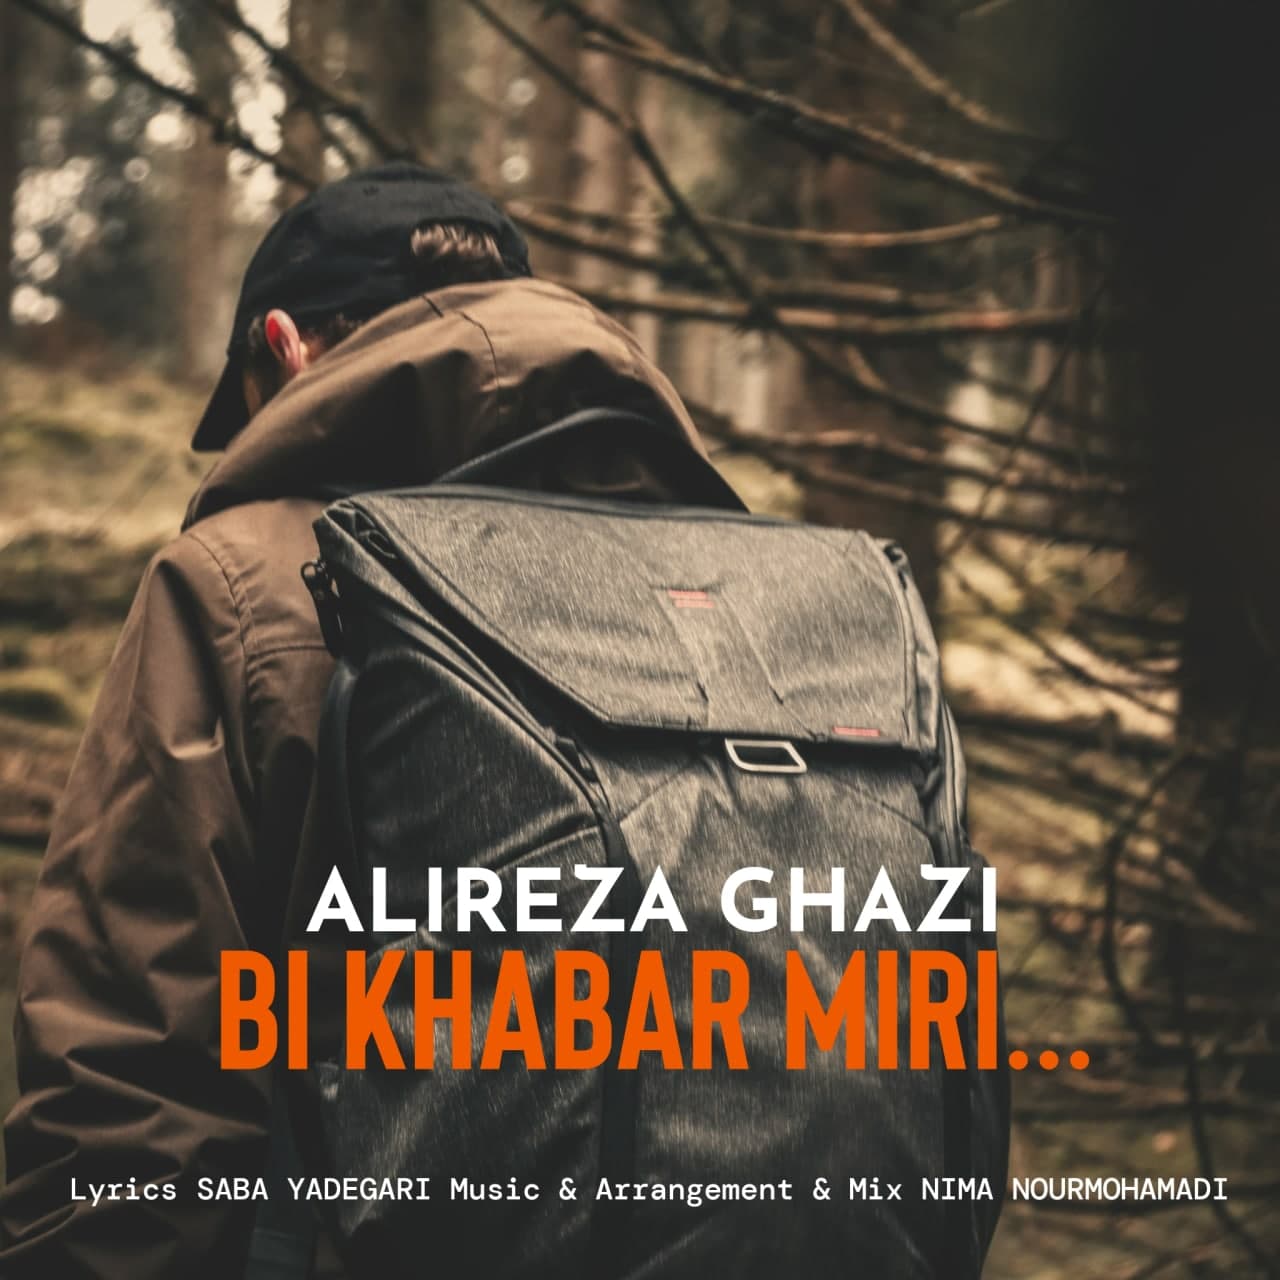 Alireza Ghazi – Bi Khabar Miri